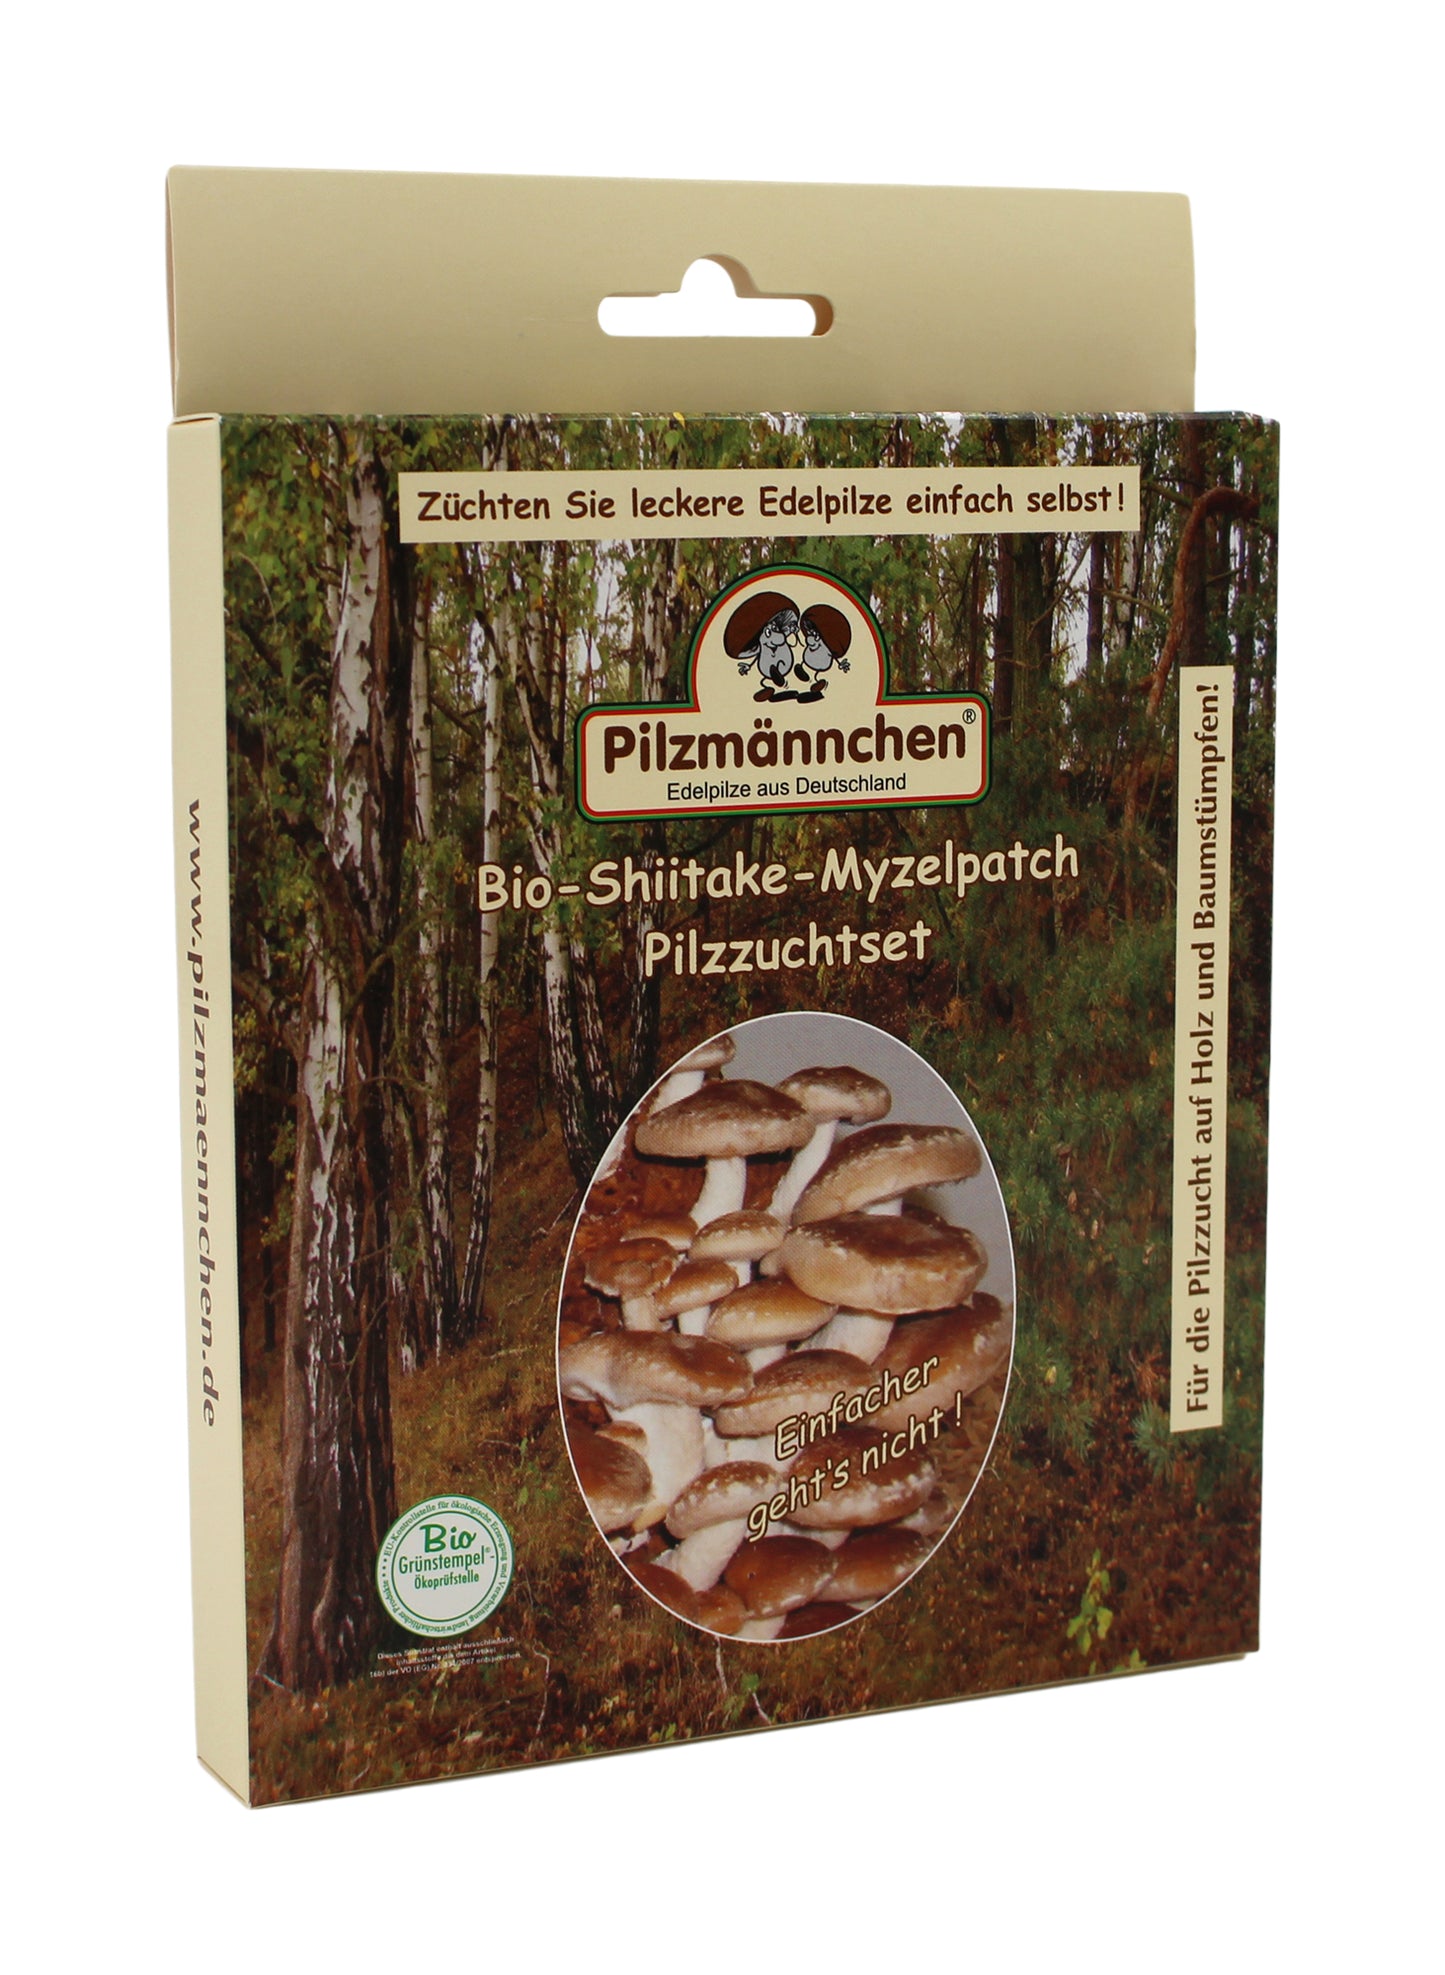 Pilzzuchtset Shiitake Myzelpatch (4 Stück) | BIO Pilzzucht von Pilzmännchen